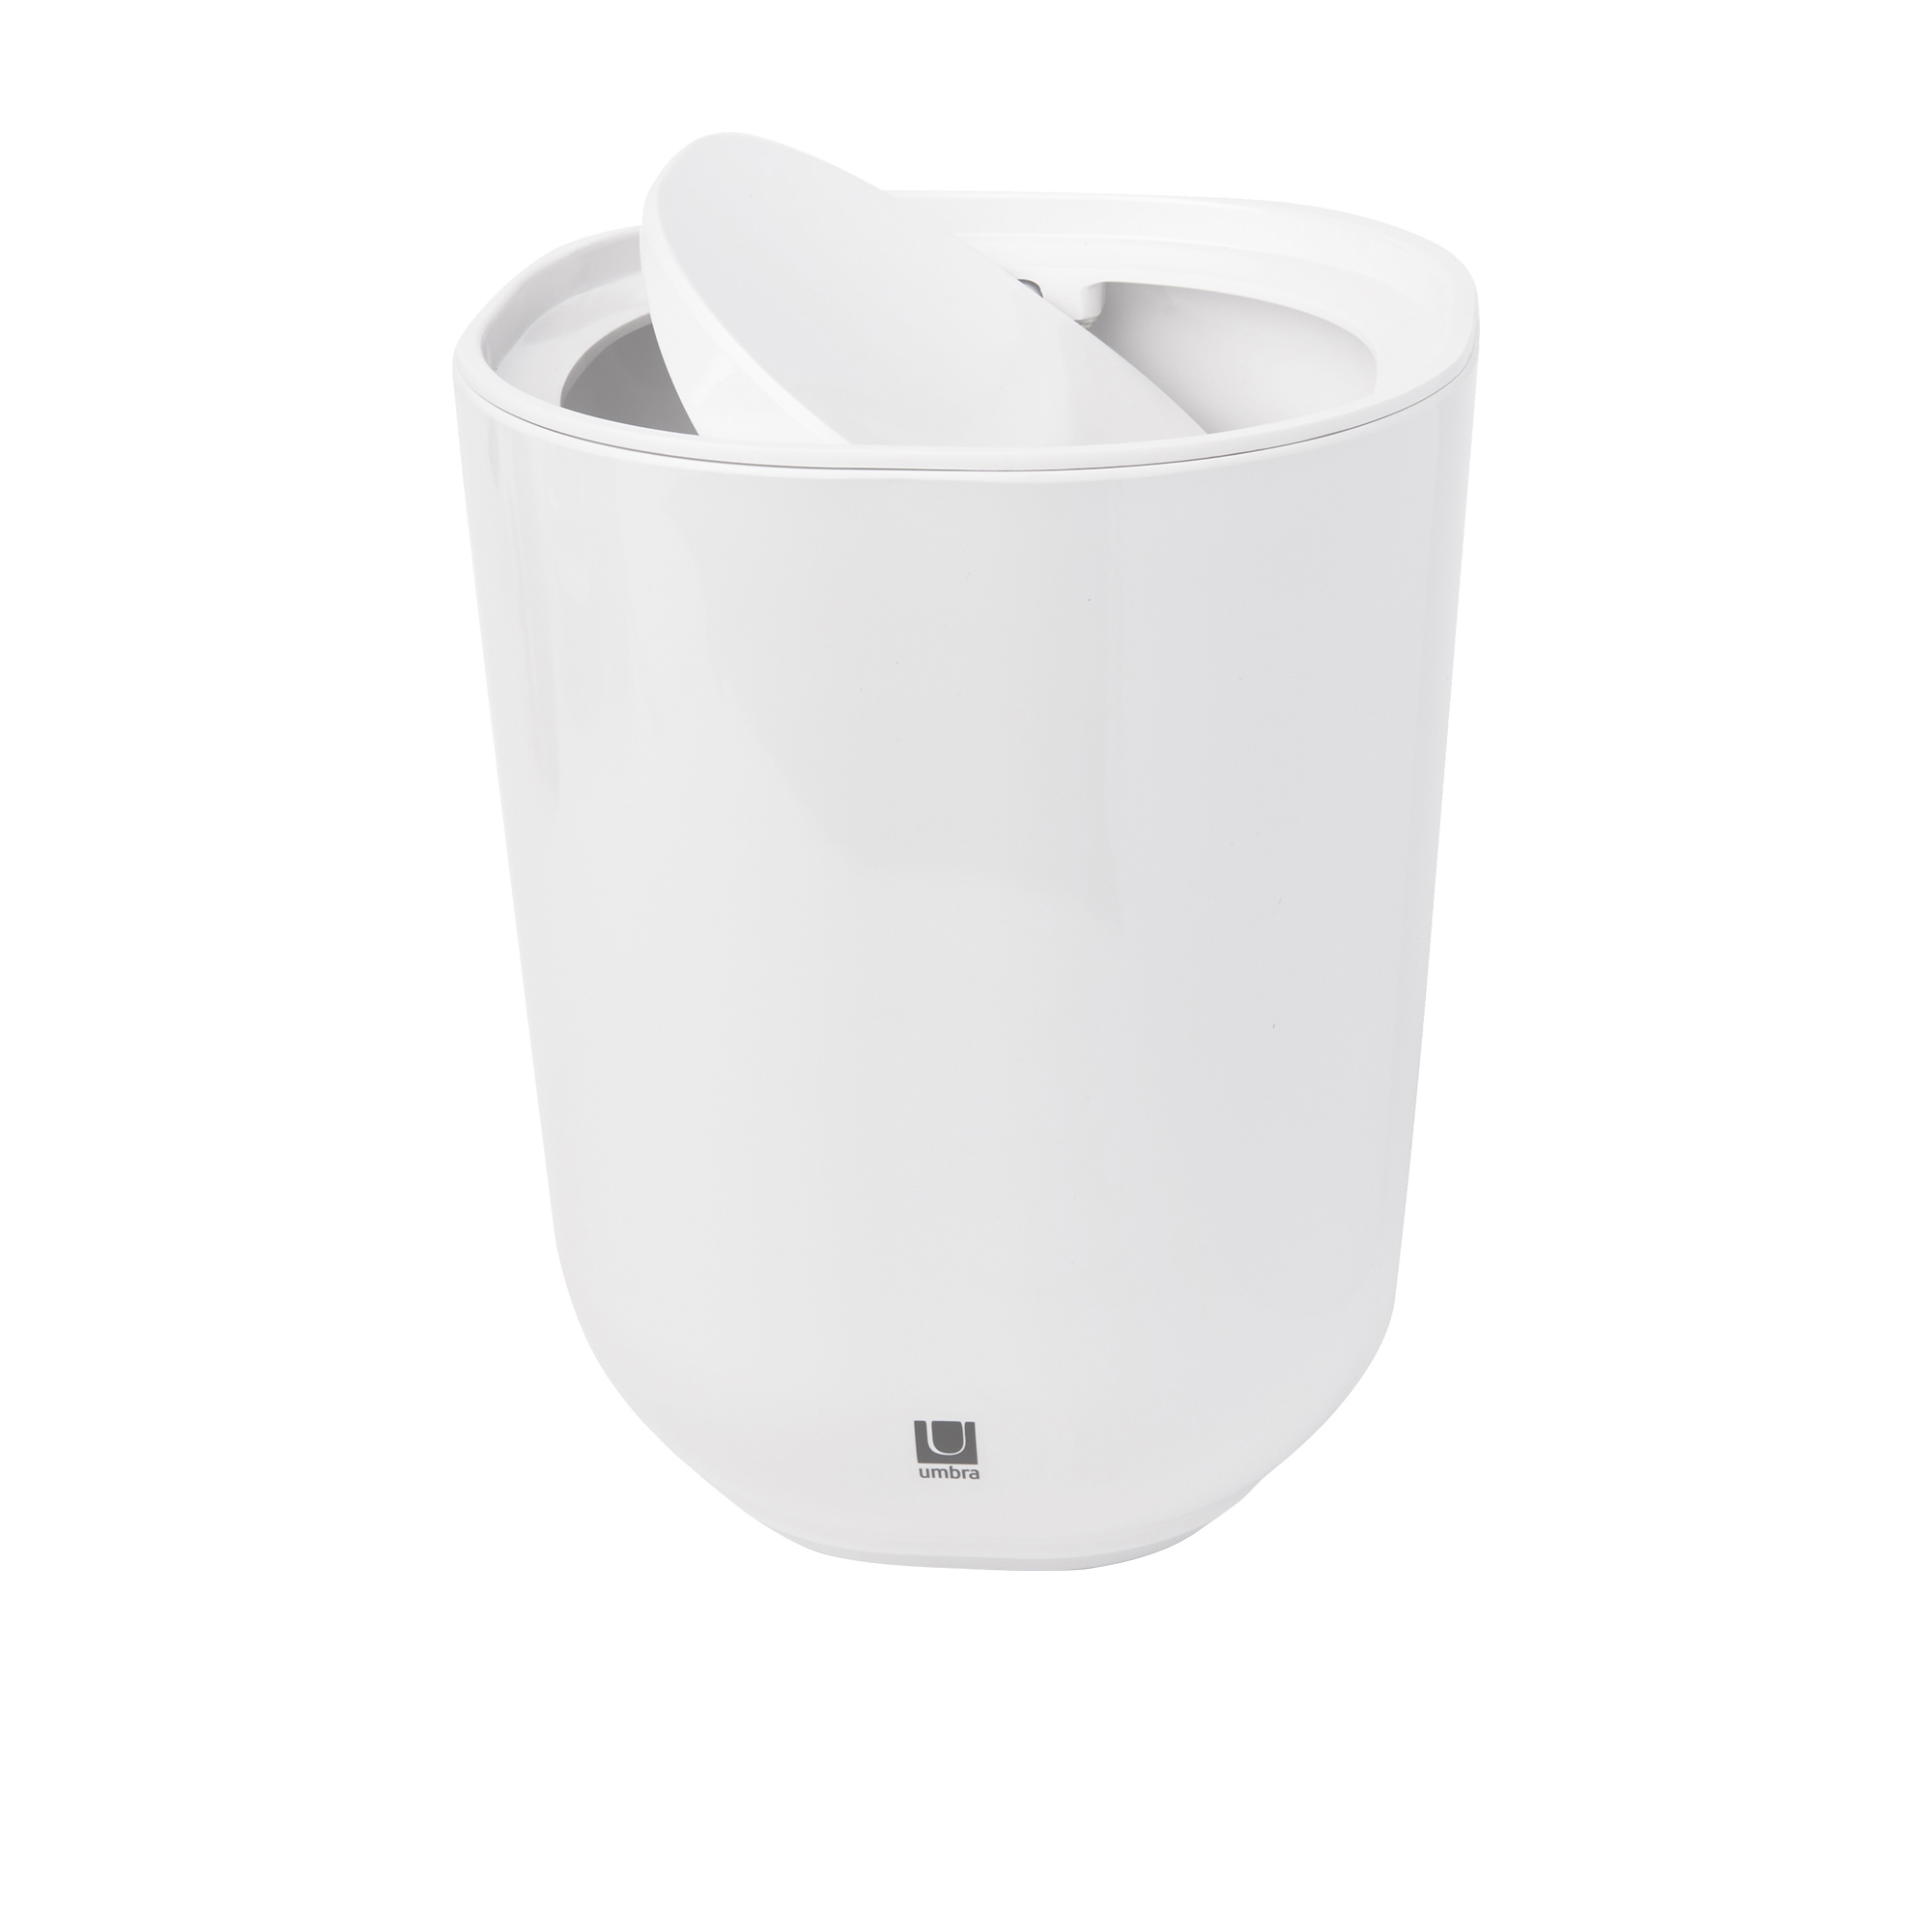 Umbra Step Trash Bin with Lid 6.6L White Image 1